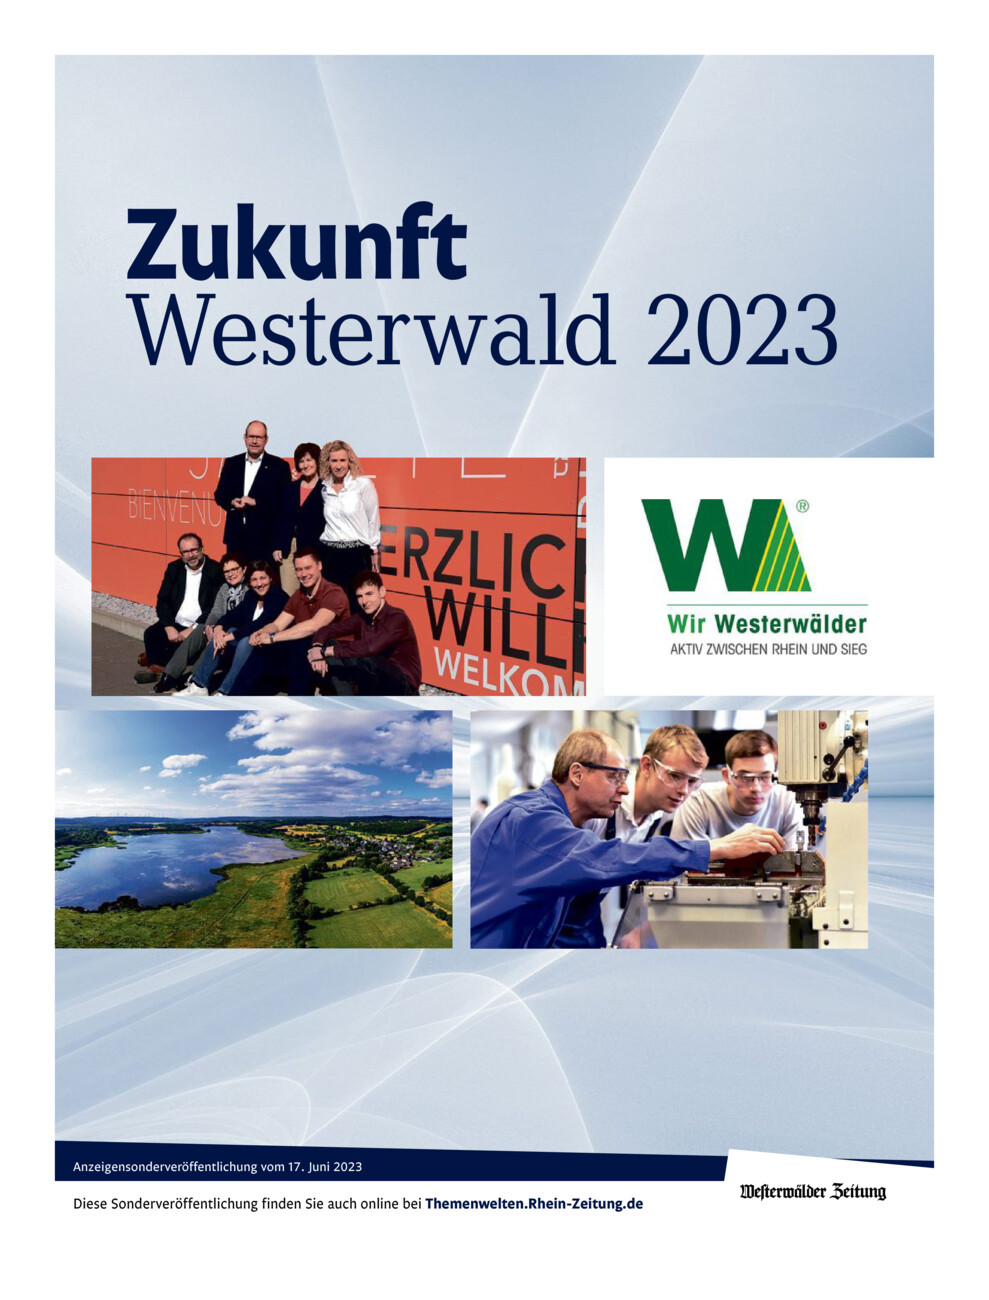 Zukunft Westerwald 2023